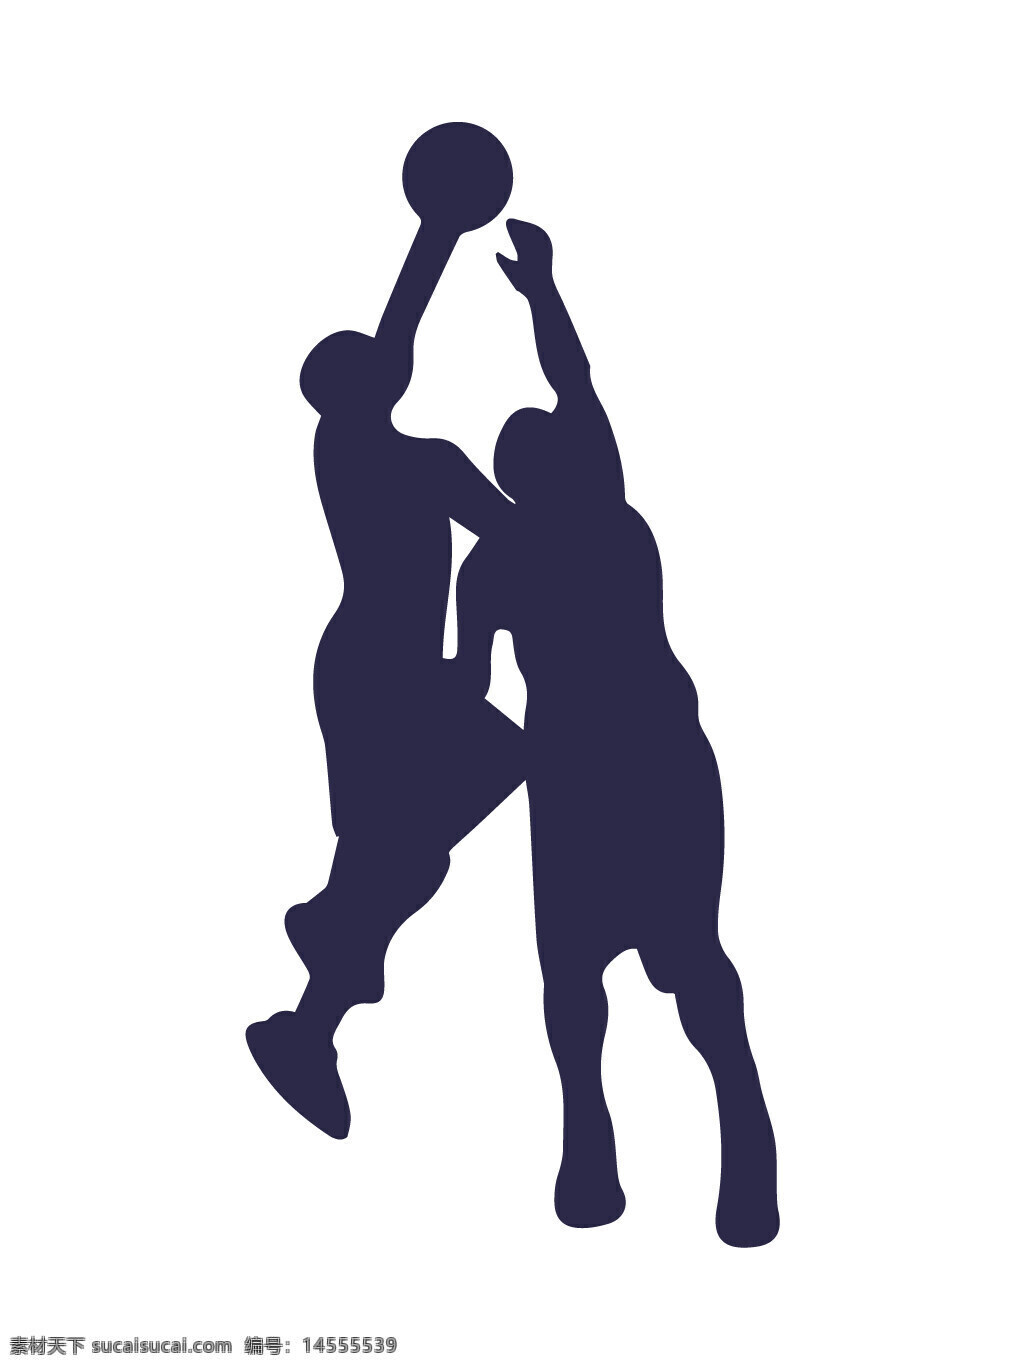 篮球 投篮 抢球 球类运动 人物剪影 运动剪影 矢量素材